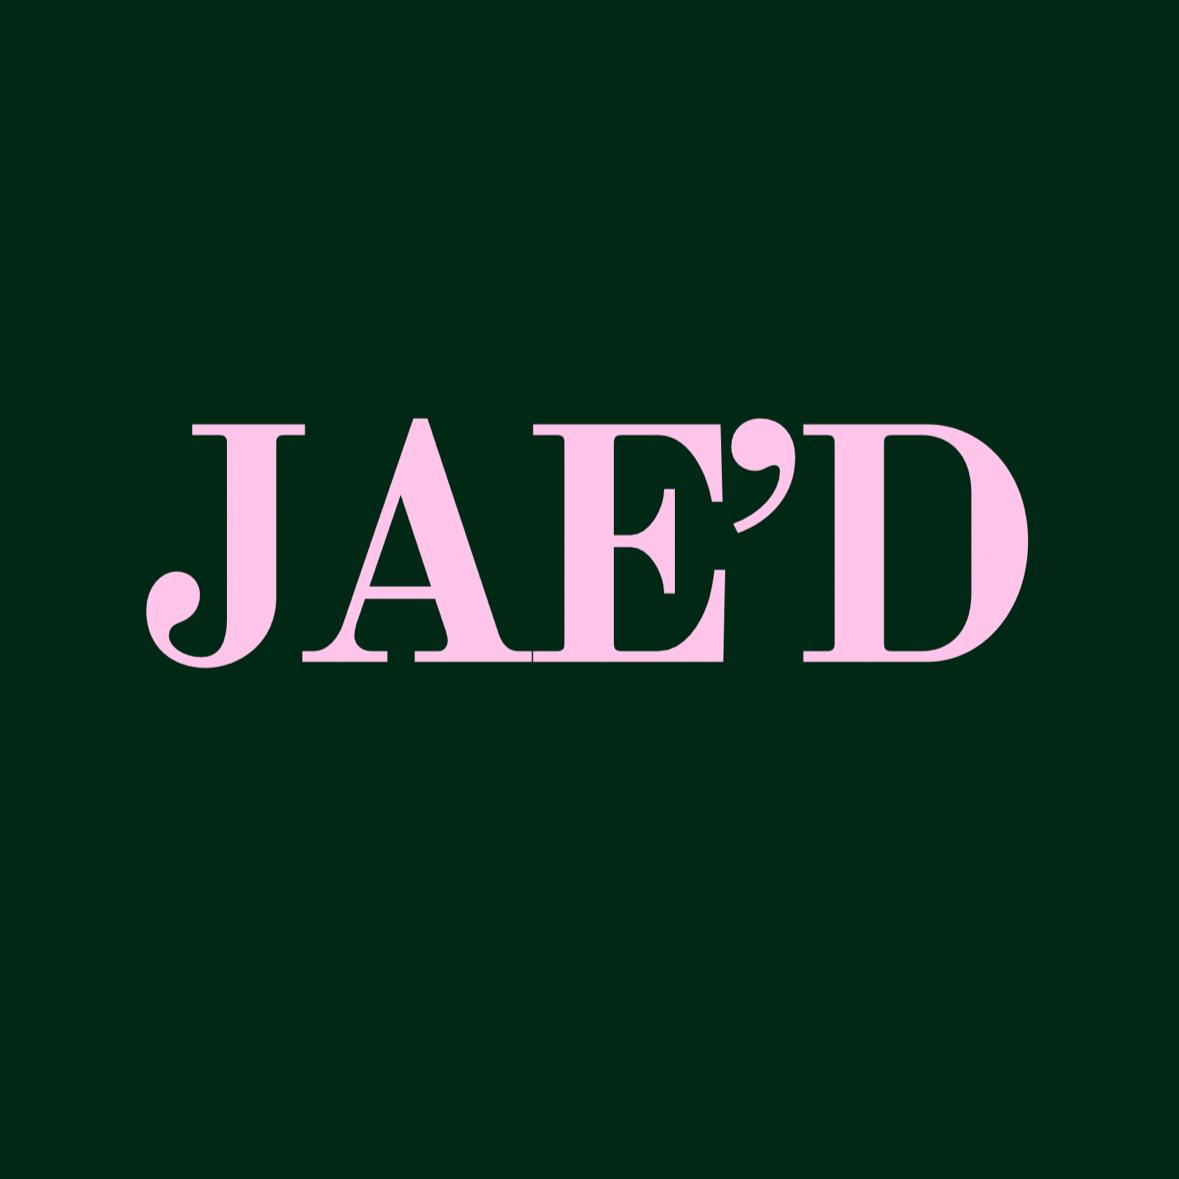 Jae’D's images